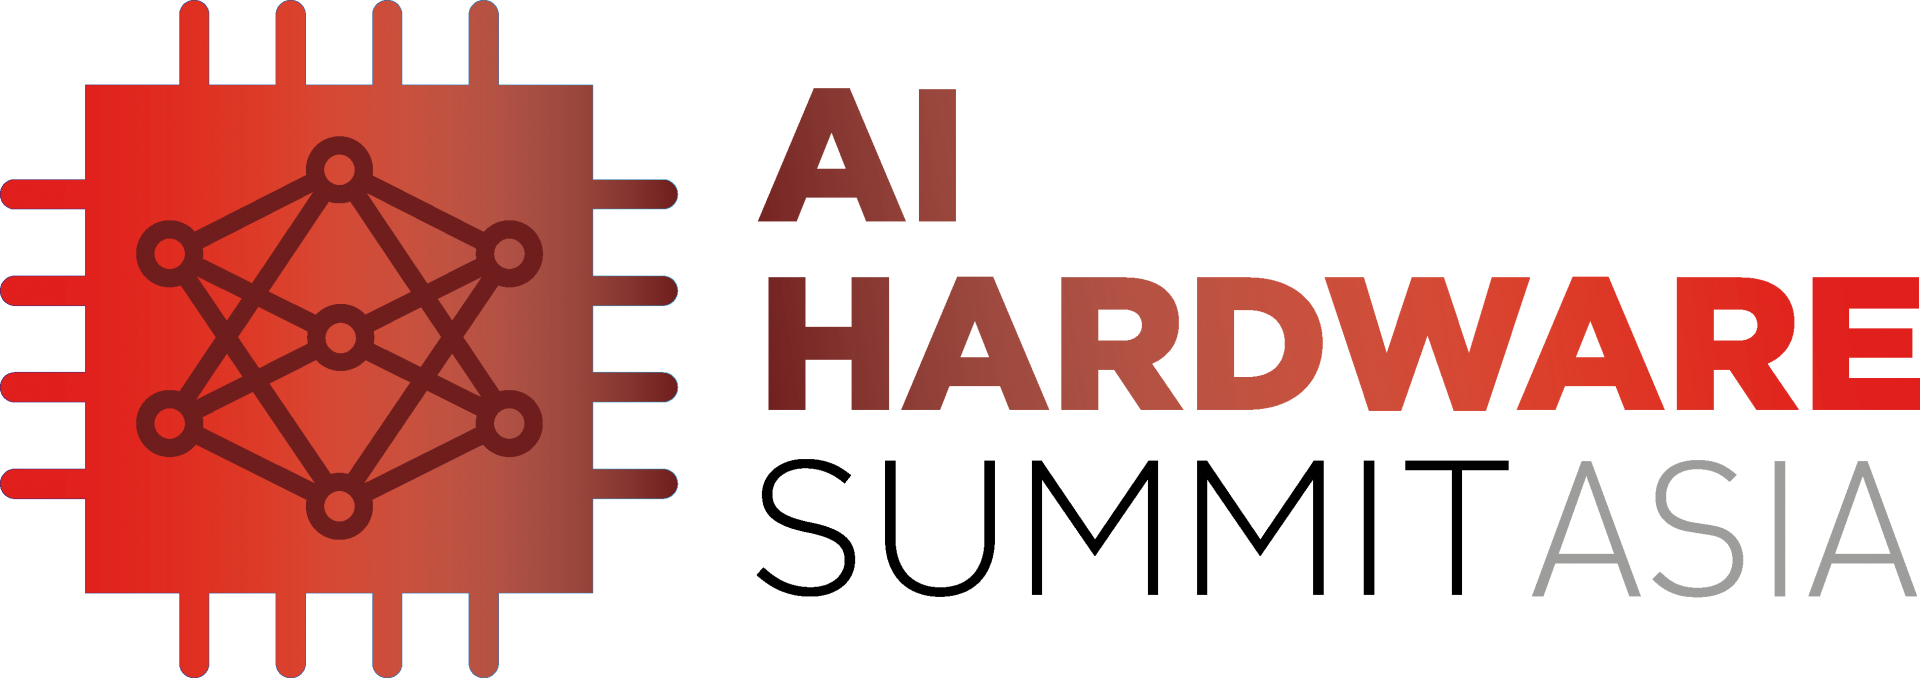 AI Hardware Summit Asia 2019